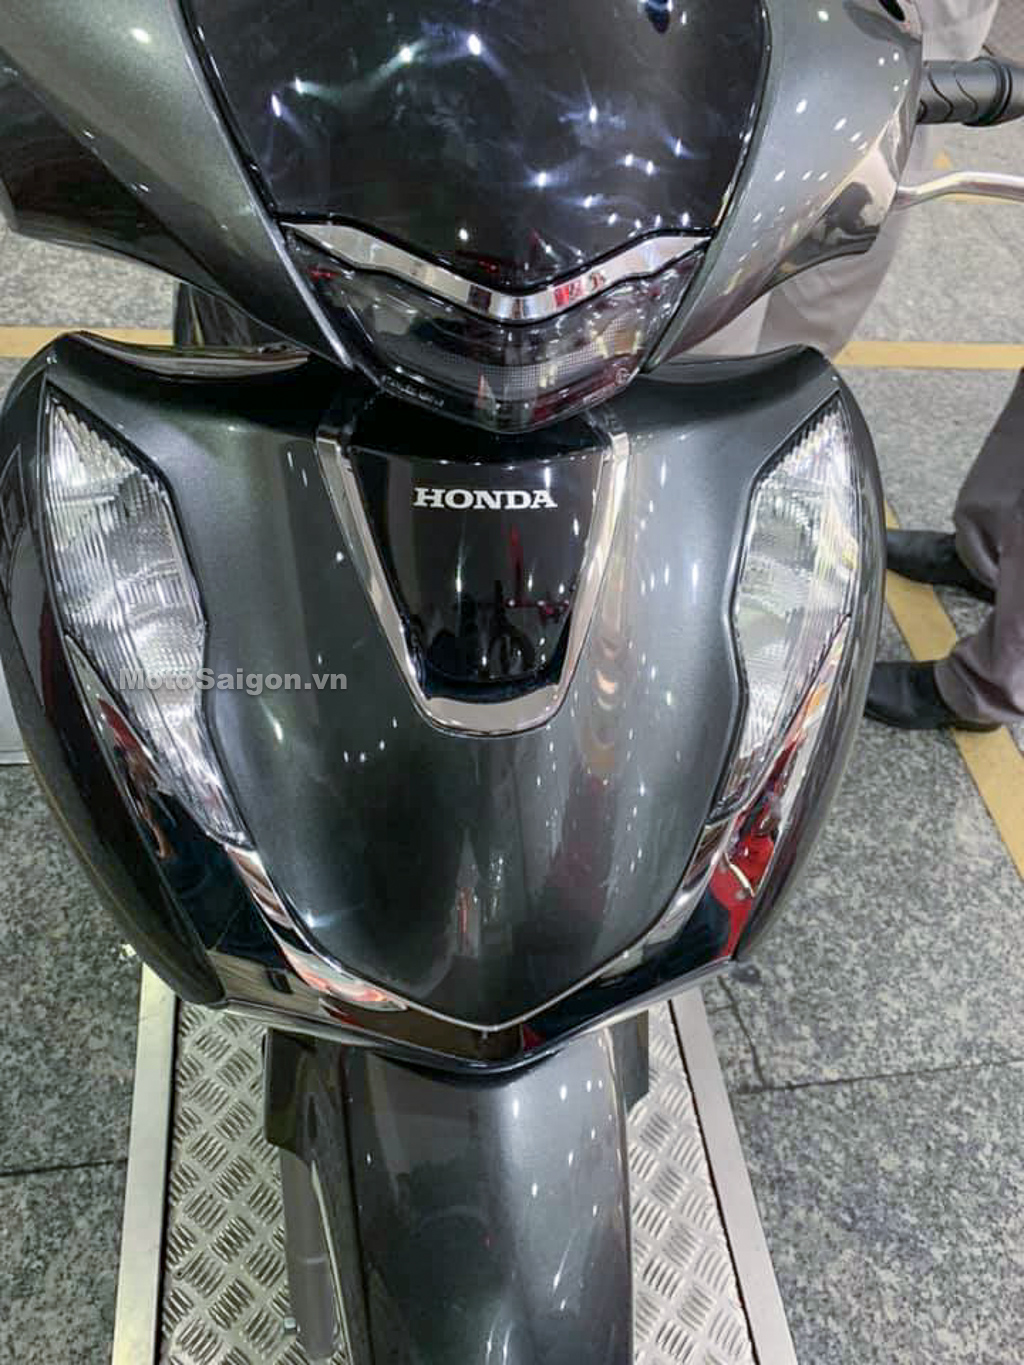 Honda Sh125 2020 Màu Xám Đầu Tiên Đã Có Giá Bán Tại Đại Lý Head - Motosaigon